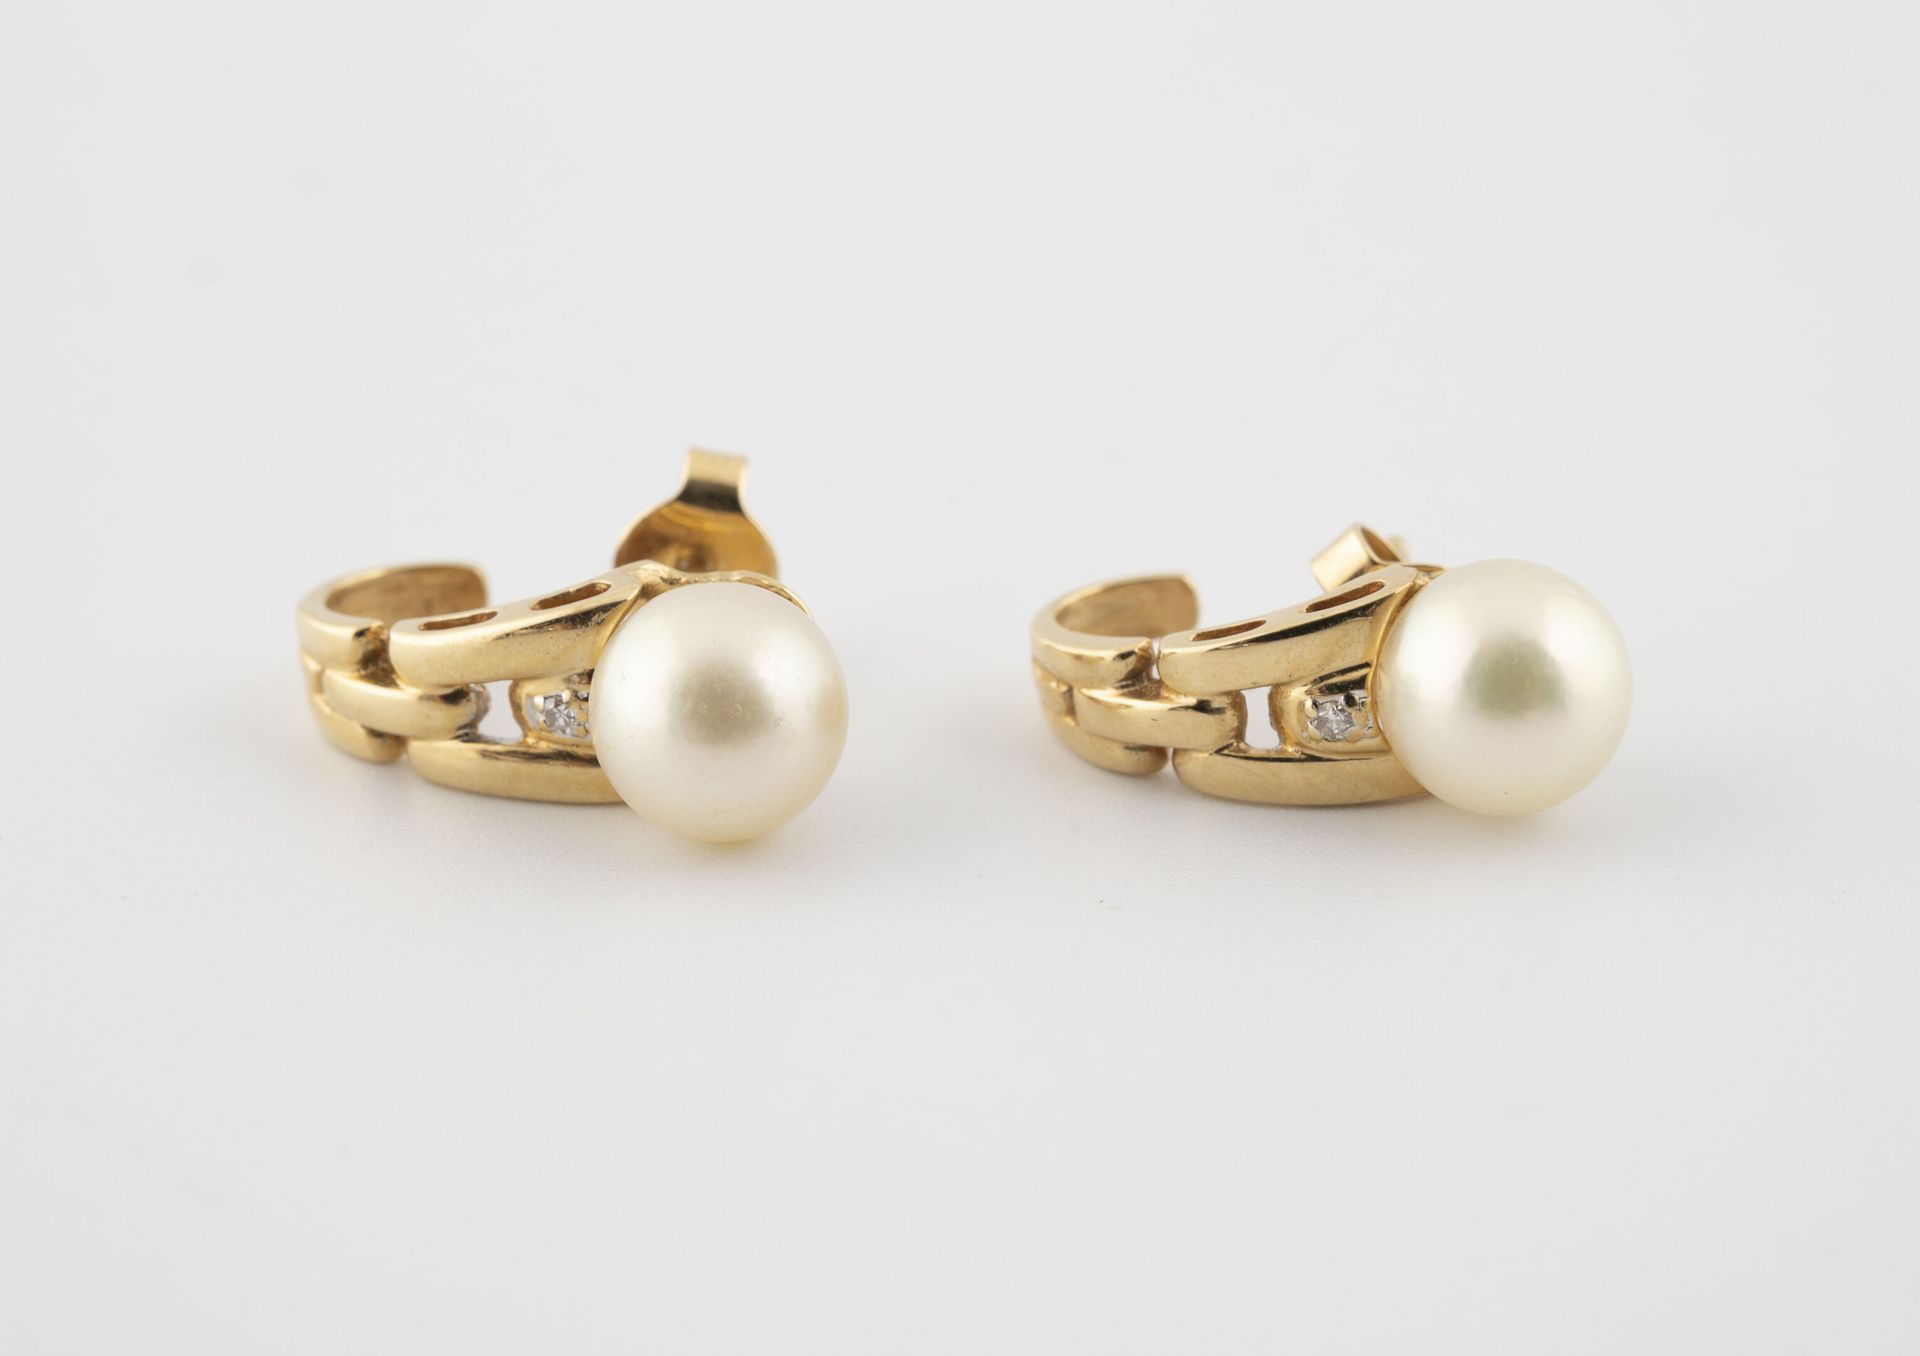 Null 
Par de pendientes de oro amarillo (750) con una perla cultivada blanca. 

&hellip;